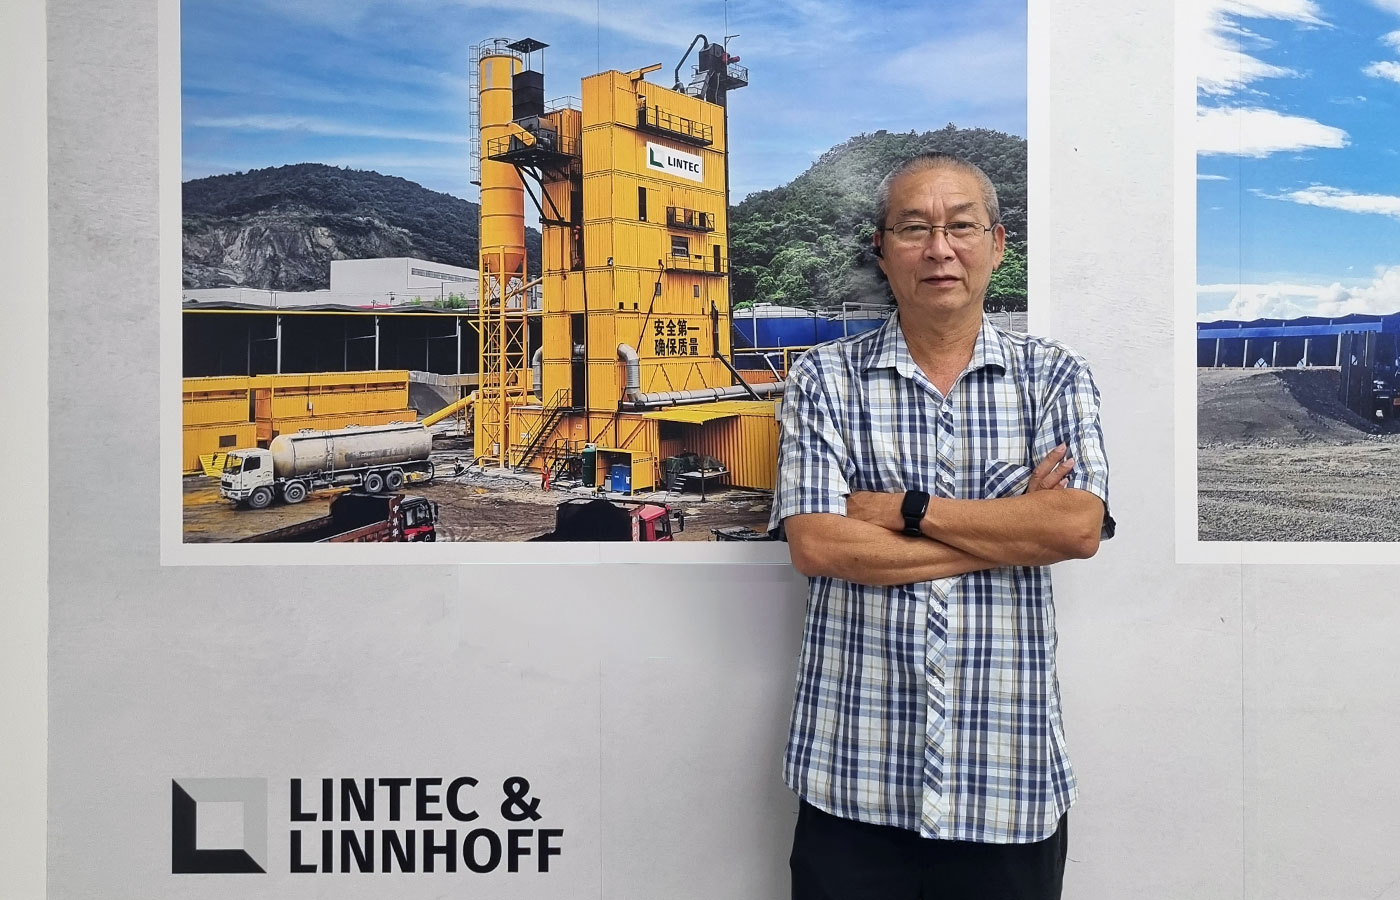 Conoce al equipo Lintec & Linnhoff: Wilson Tan